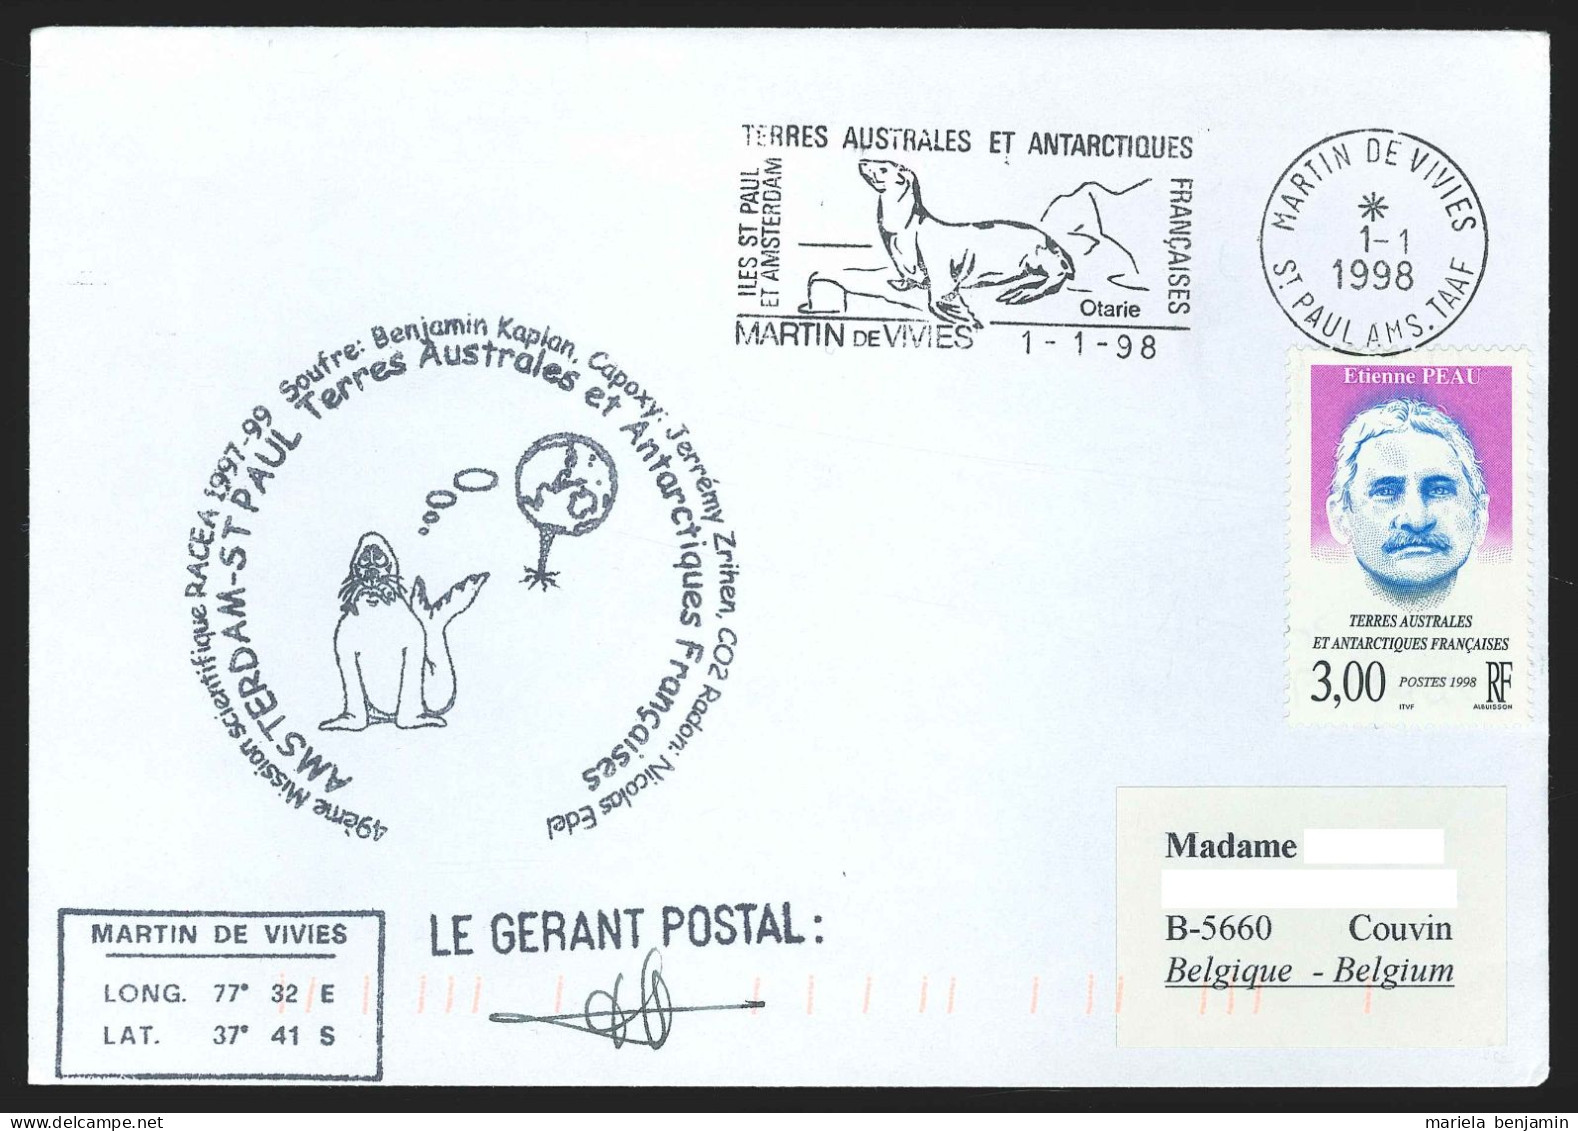 TAAF - St-Paul & Amsterdam - RACEA 49e Mission Affr. Etienne Peau Oblit. 1e Jour Martin-de-Viviès 1-1-1998 - Covers & Documents